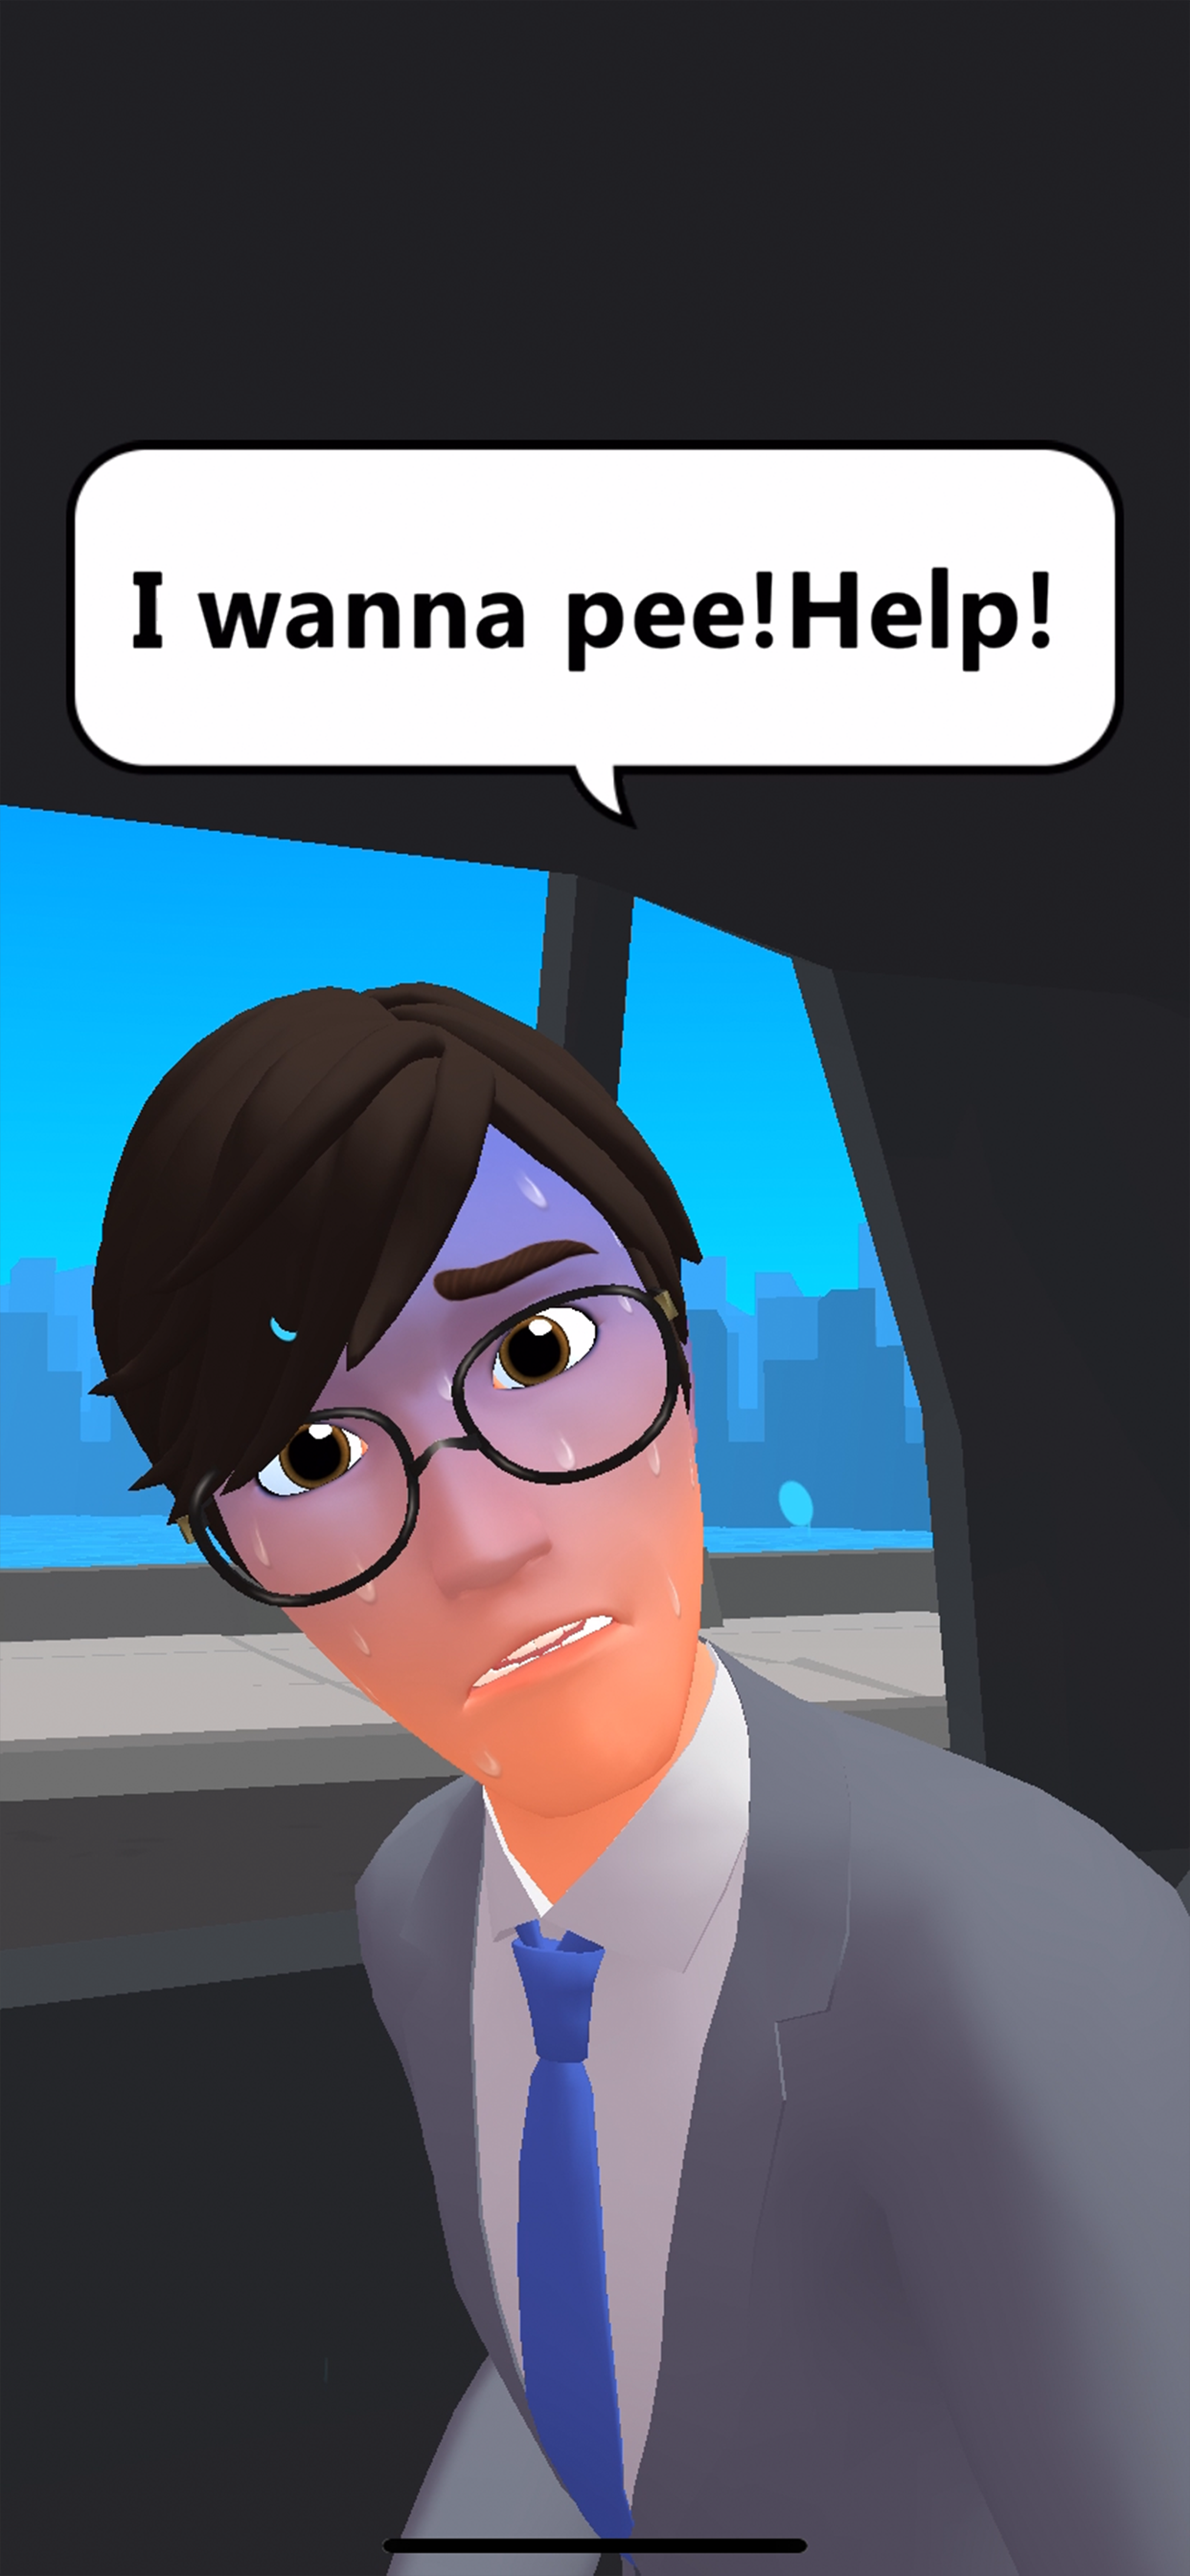 Screenshot 1 of Taxi Master - Trò chơi vẽ và kể chuyện 1.0.5